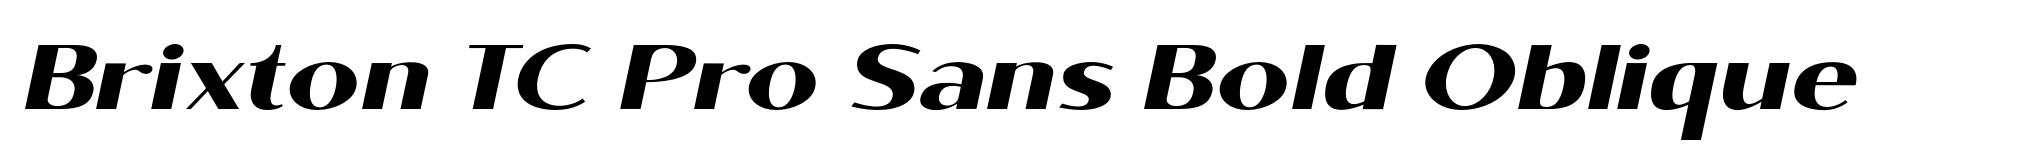 Brixton TC Pro Sans Bold Oblique image